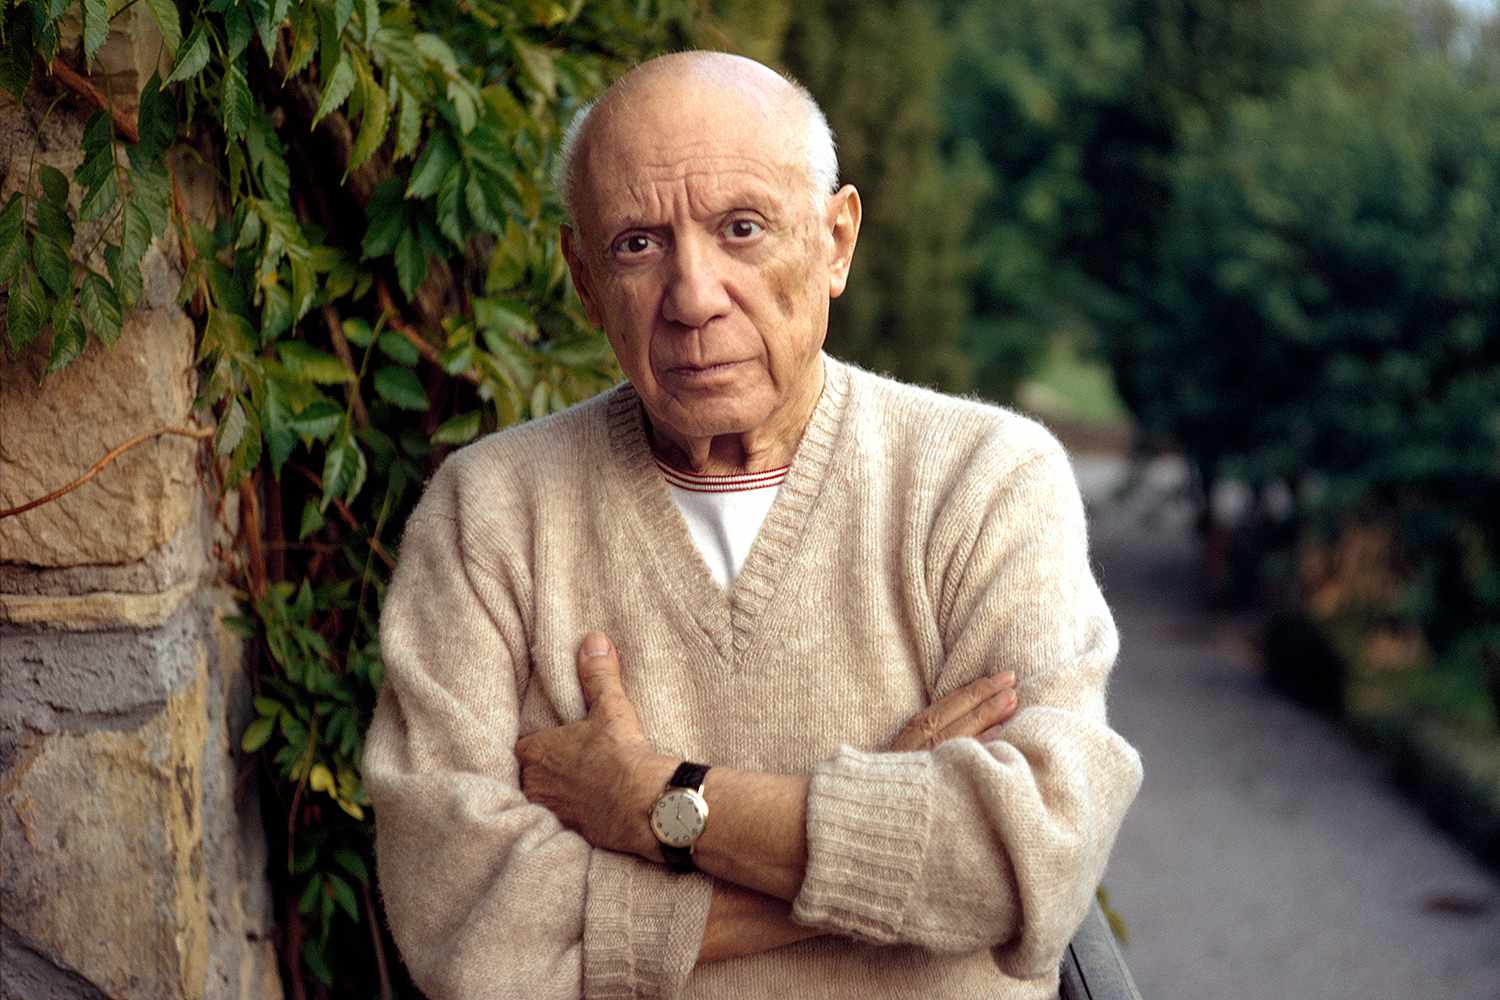 Explorando a Alma Humana: Os Retratos e Caricaturas Inovadoras de Pablo Picasso